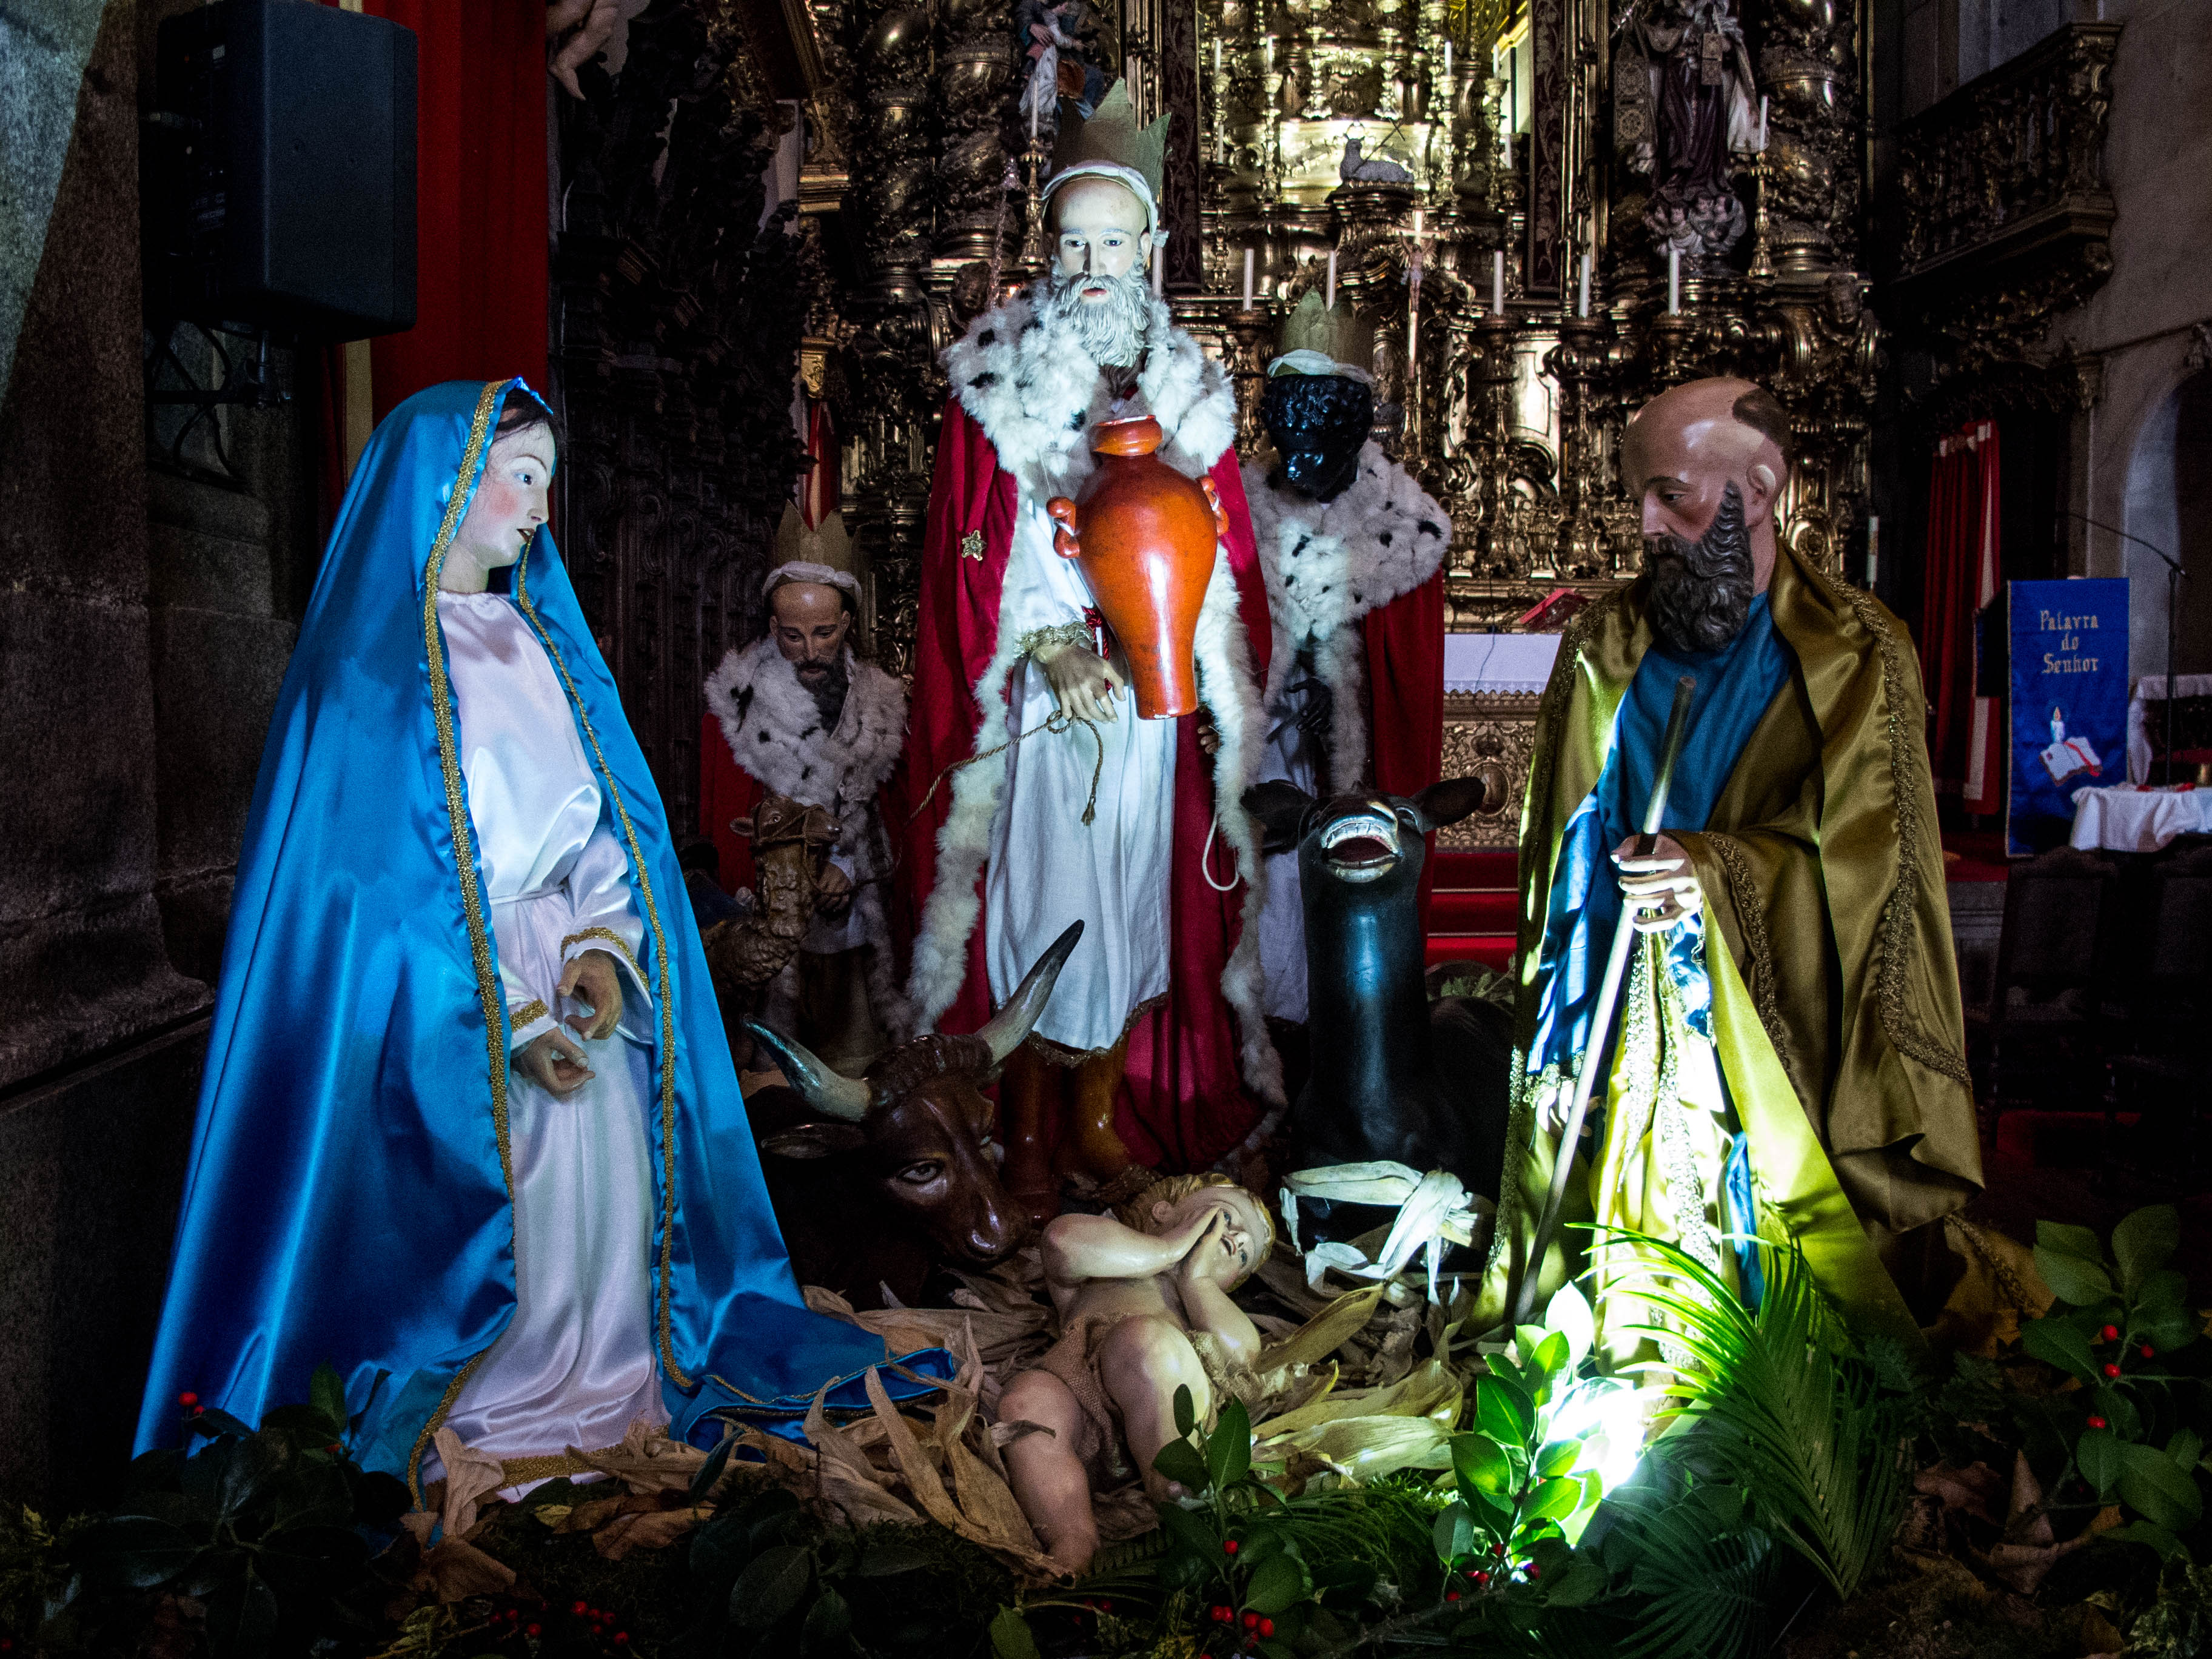 Fíjense en este curioso Belén de la Igreja do Carmo, las estatuillas llevan ropa de verdad, y los Reyes Magos llegaron temprano! La foto es del día 17 de diciembre).